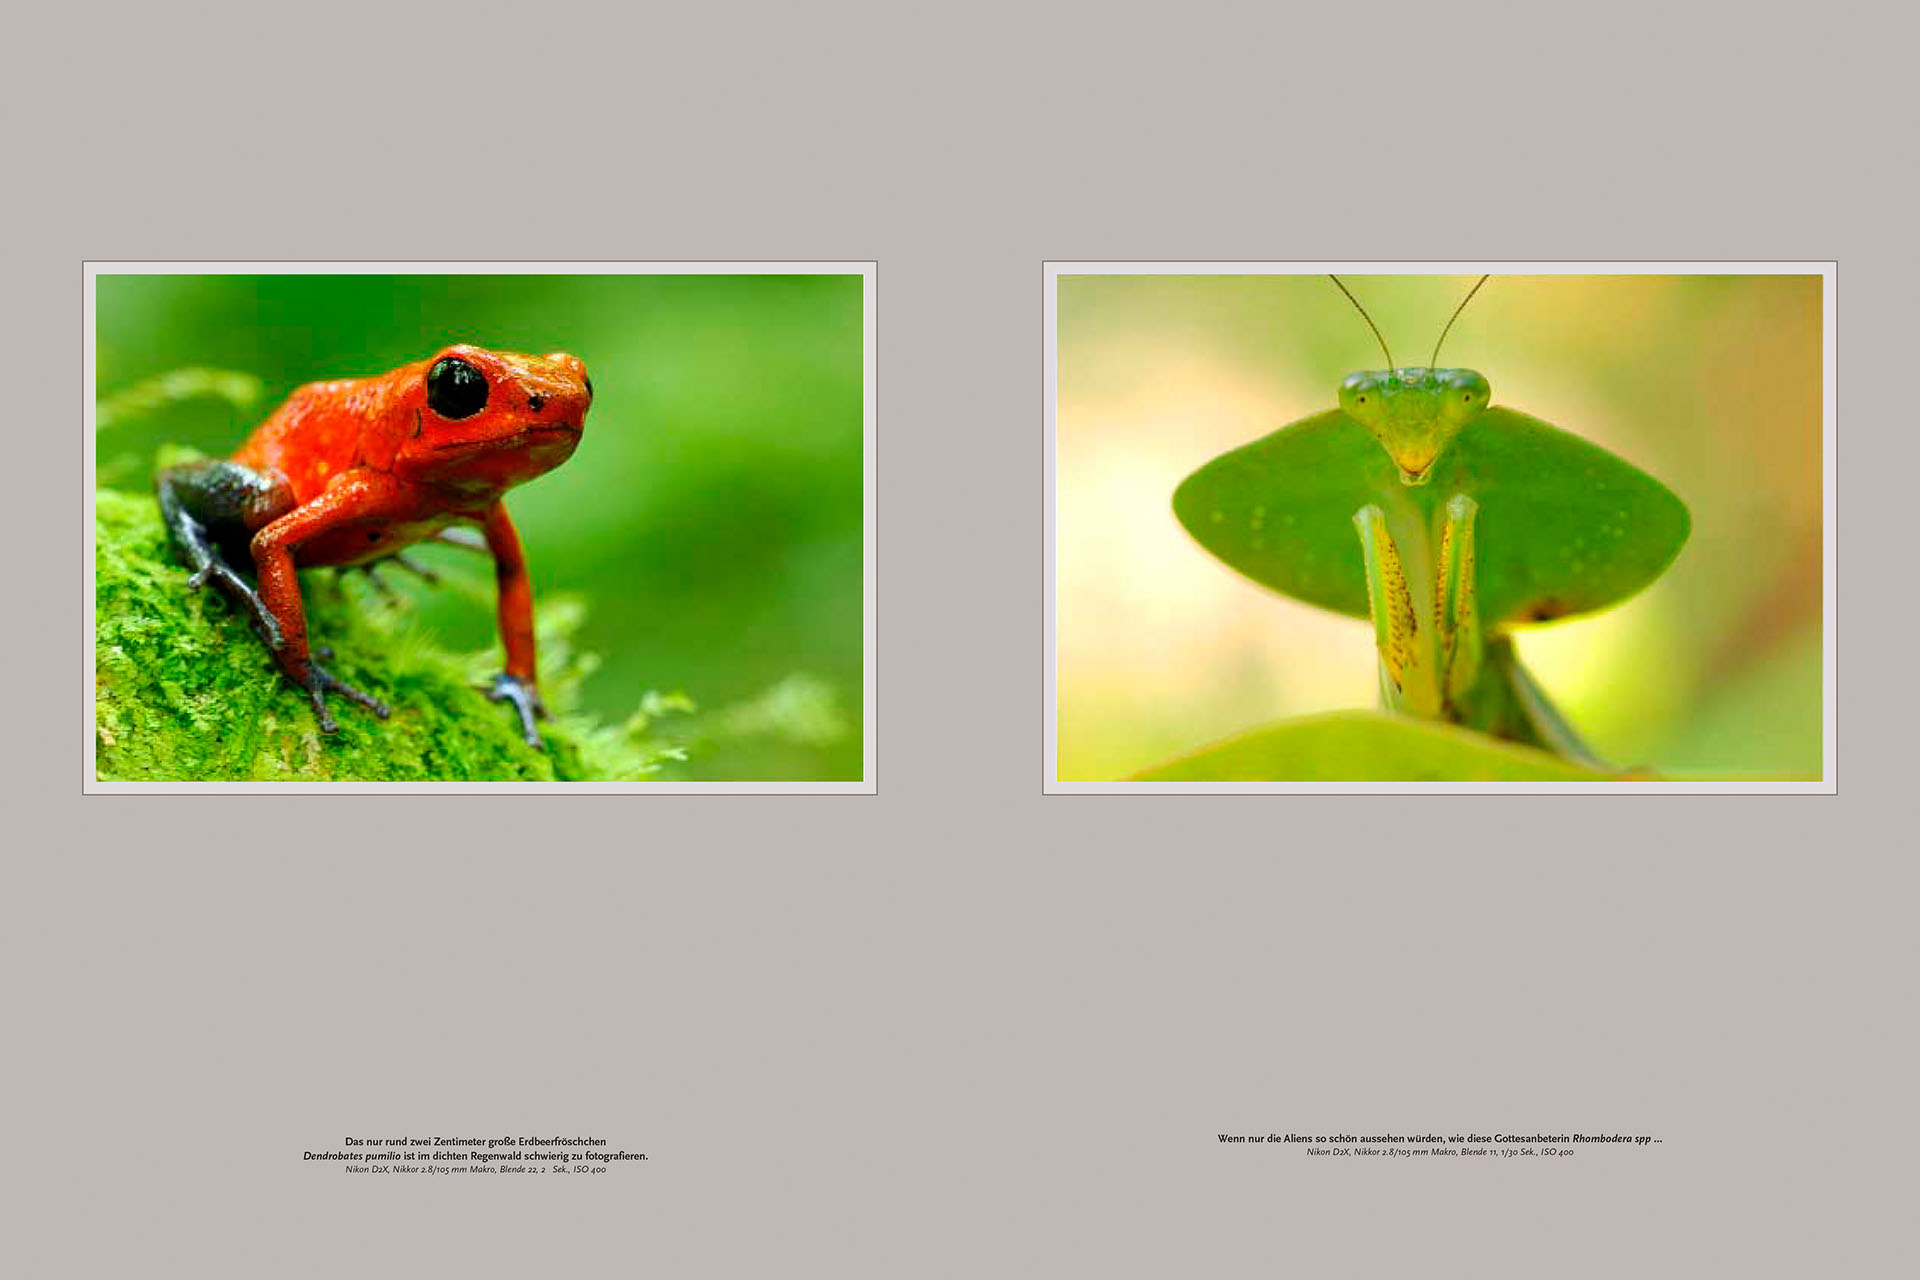 Tien pagina's over de wildlife van Costa Rica in het Duitse tijdschrift NaturFoto.